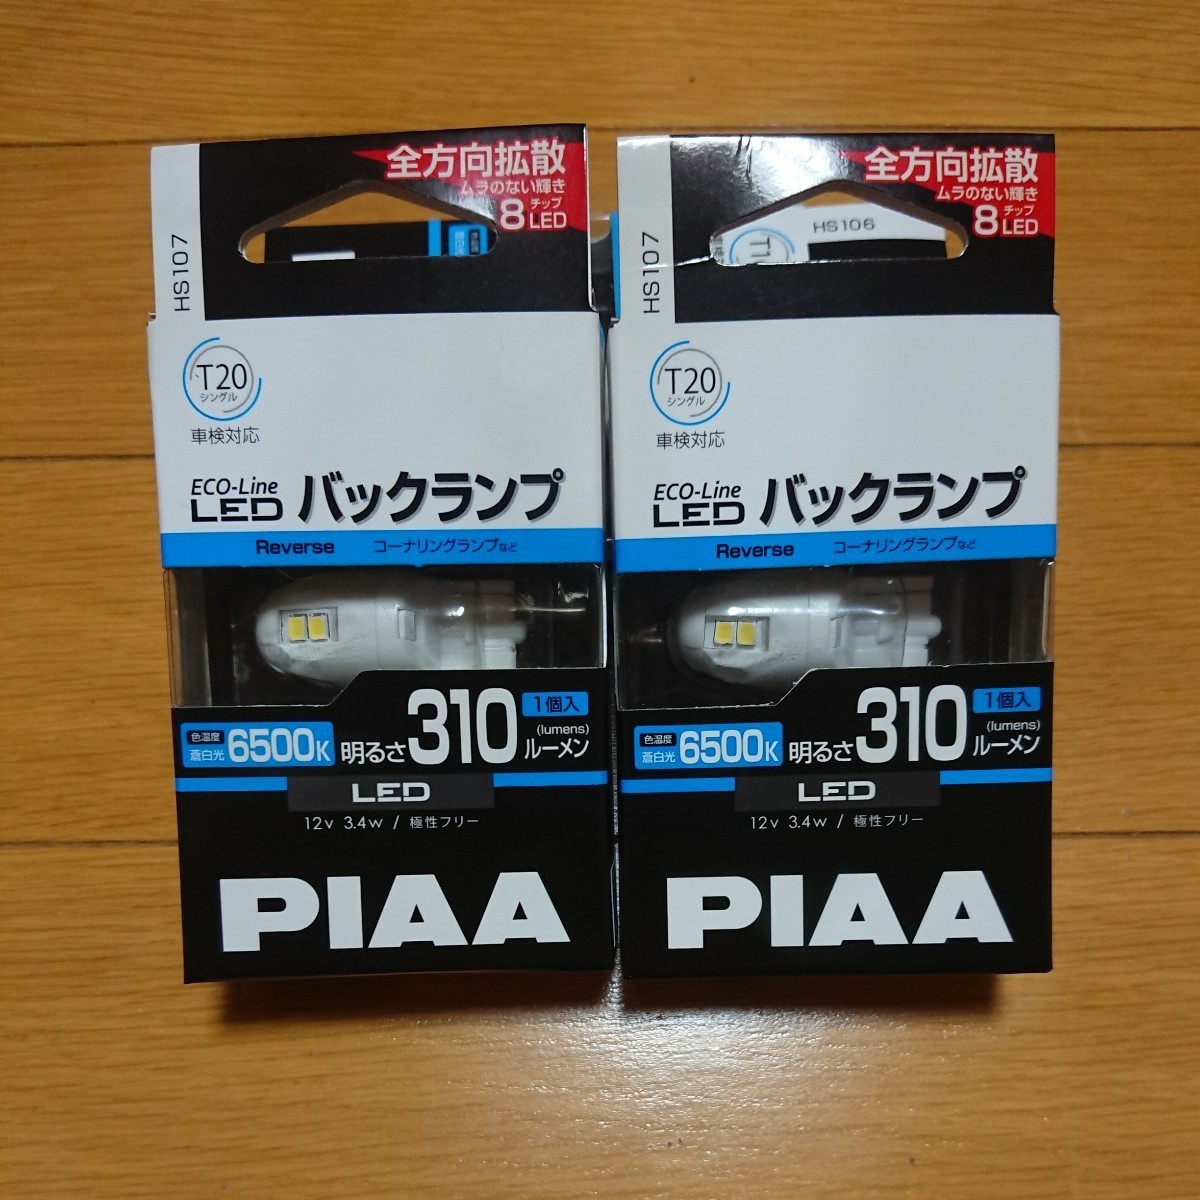 PIAA LEDバックランプ T20 6500K 310ルーメン _画像1